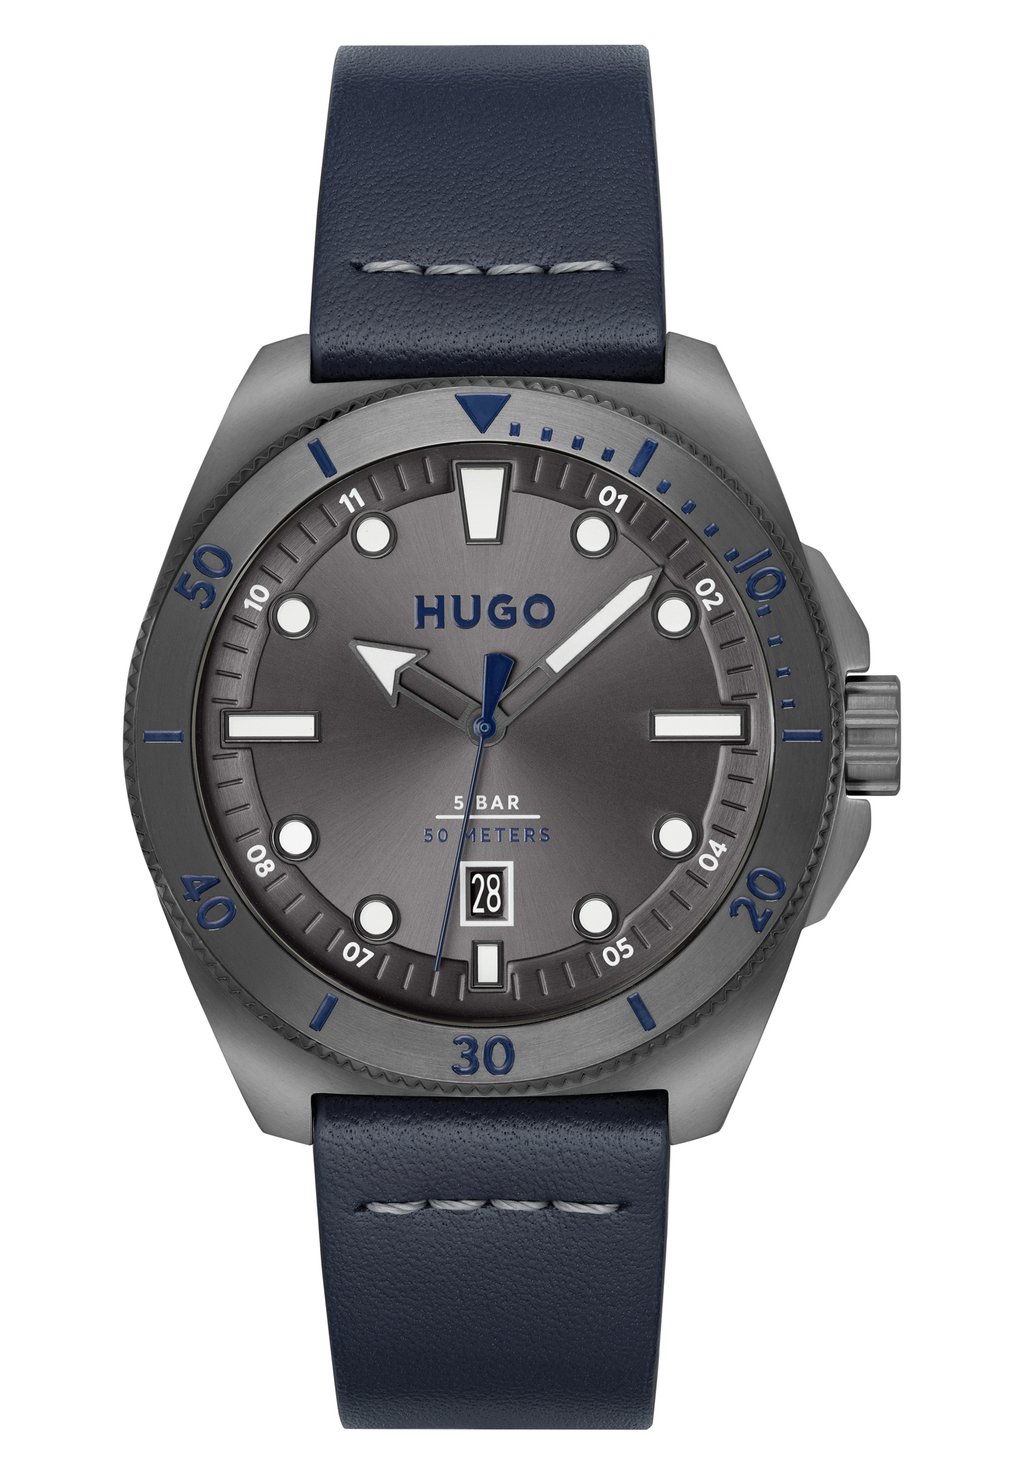 Часы Visit HUGO, цвет grau grau grau blau